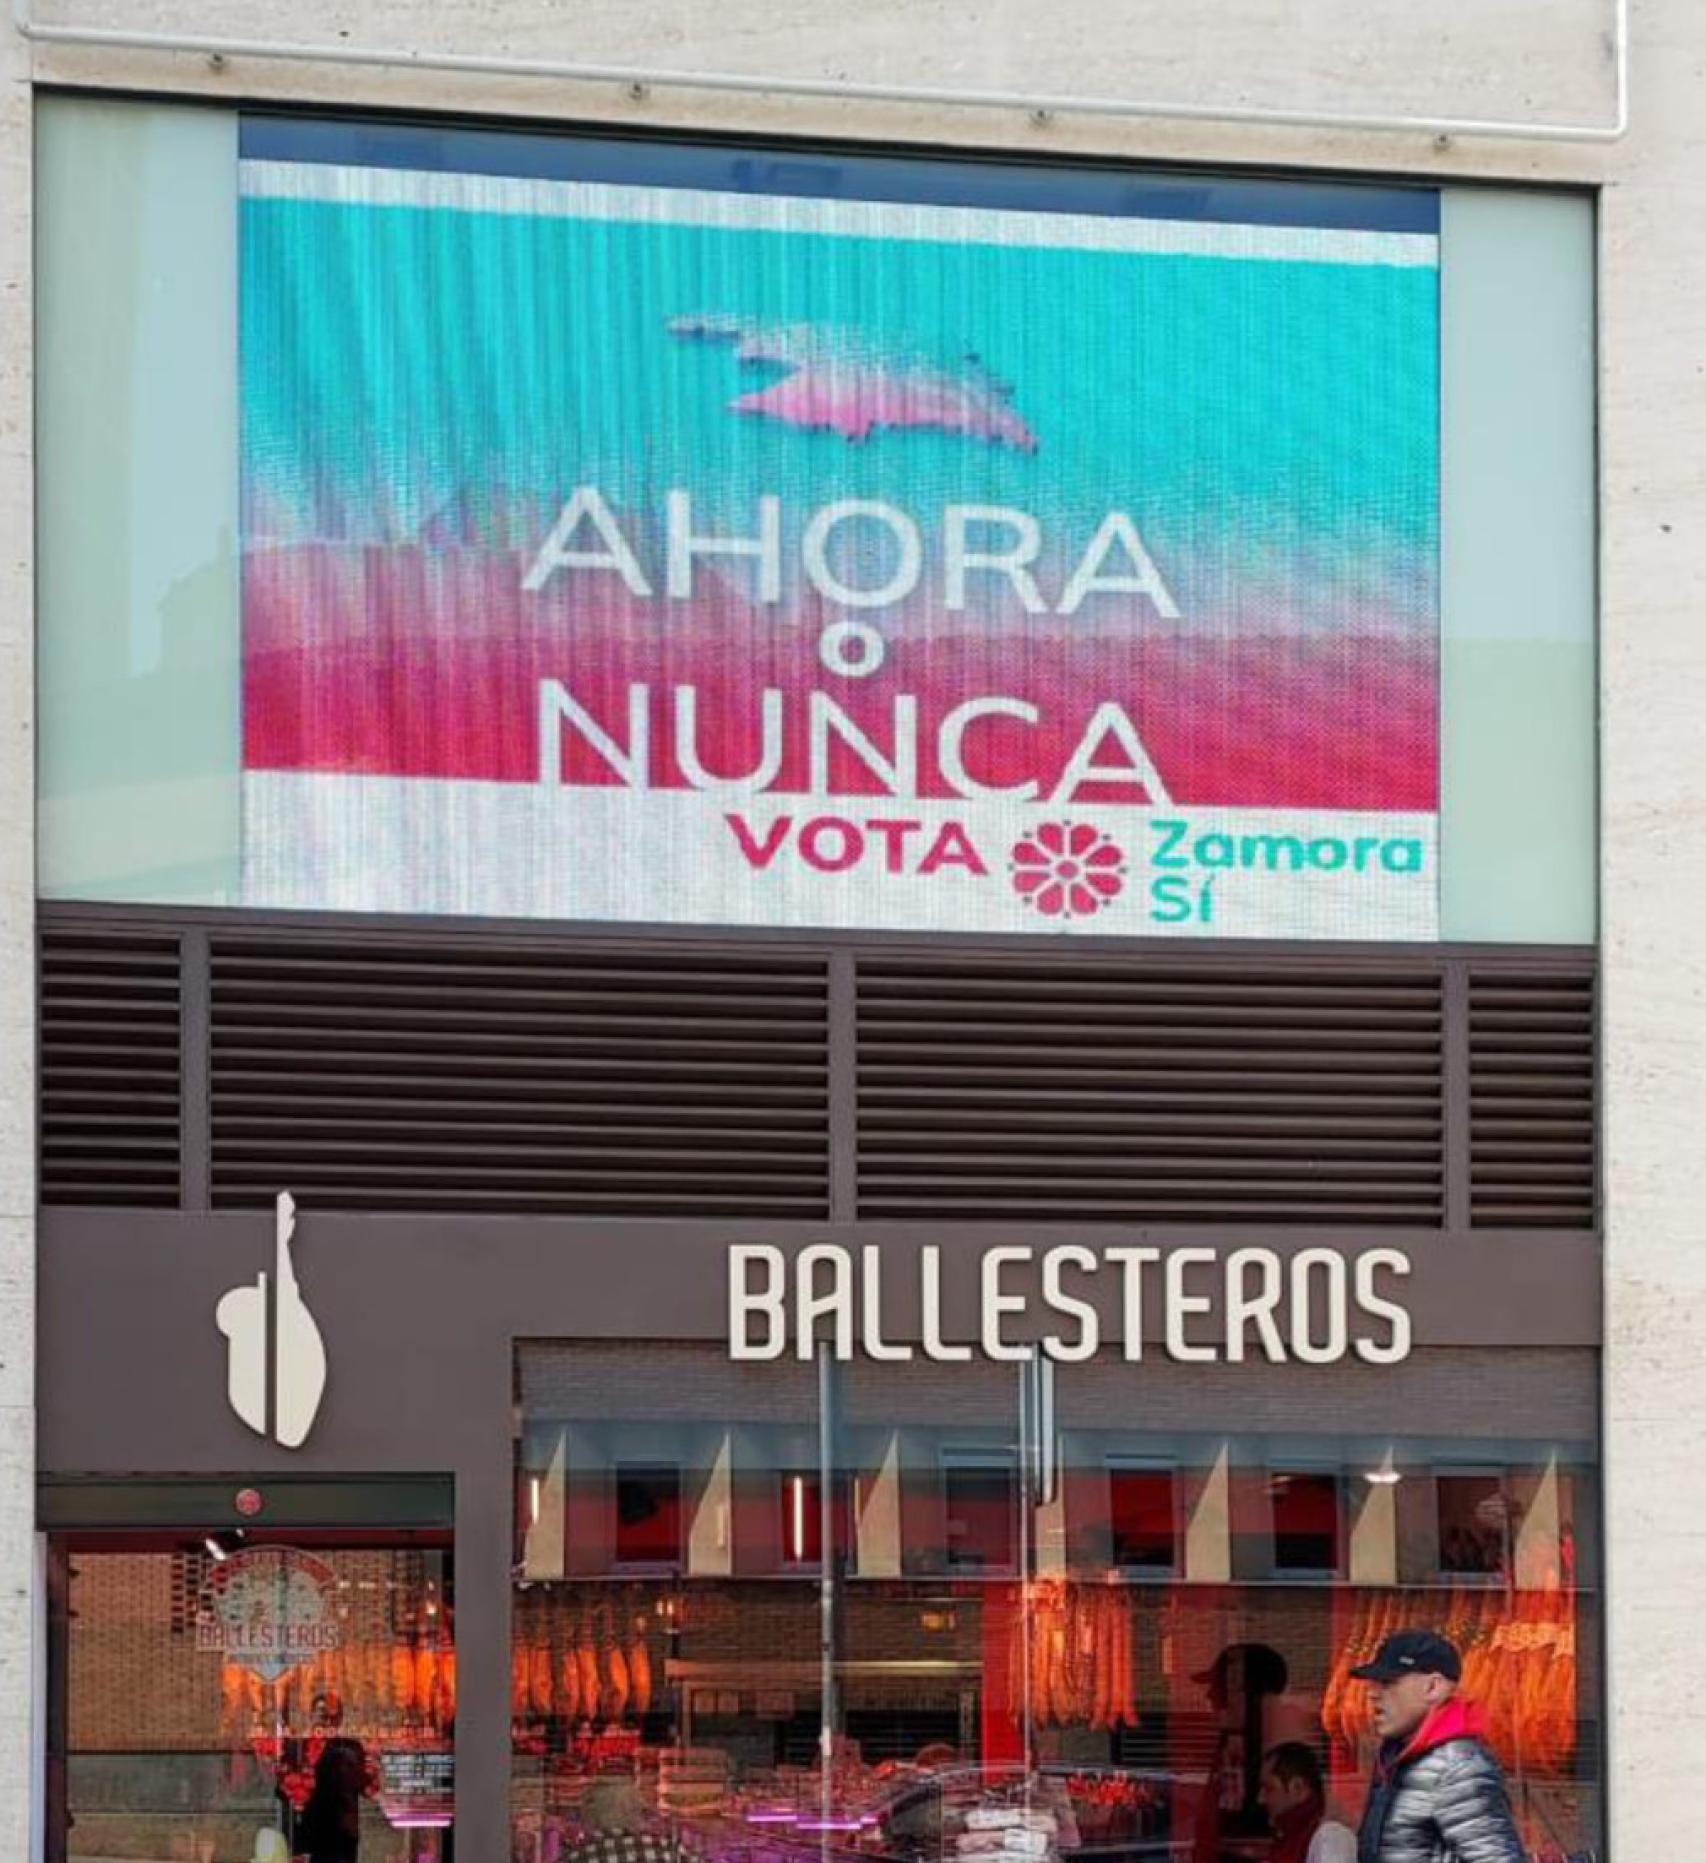 Publicidad electoral de Zamora Sí encima de la carnicería Ballesteros